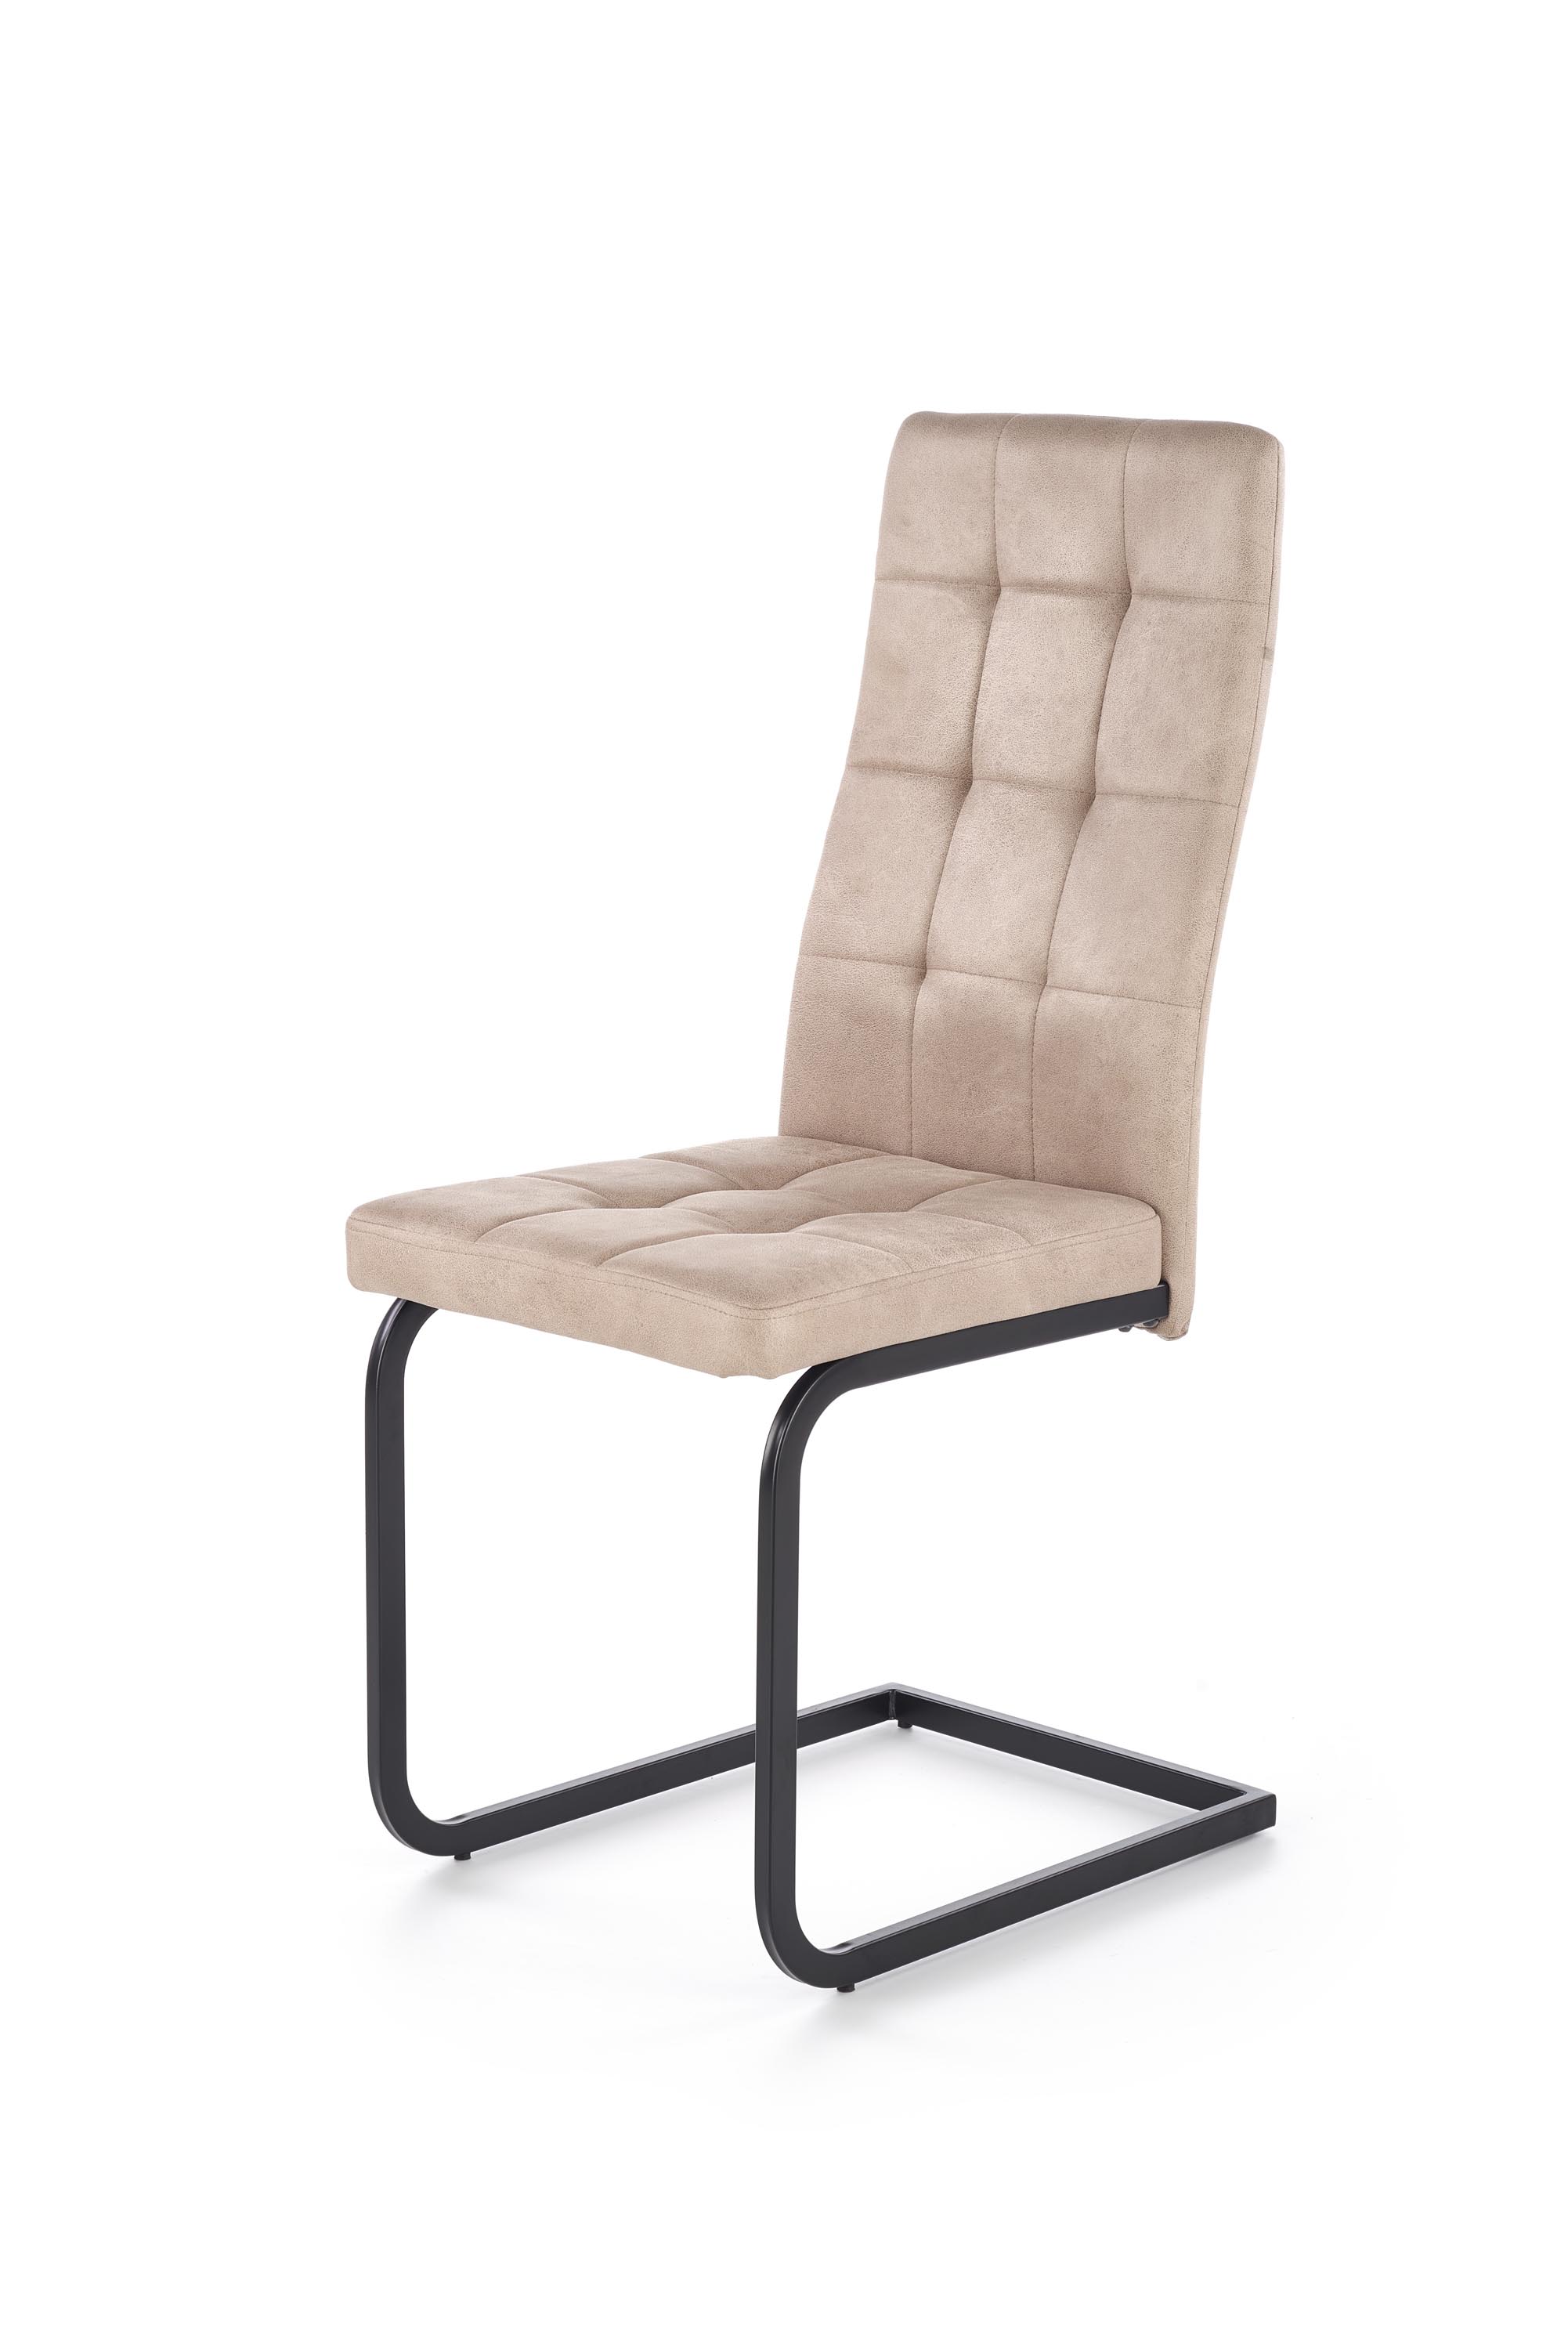 K310 krzesło stelaż - czarny, tapicerka - beżowa (1p=4szt)